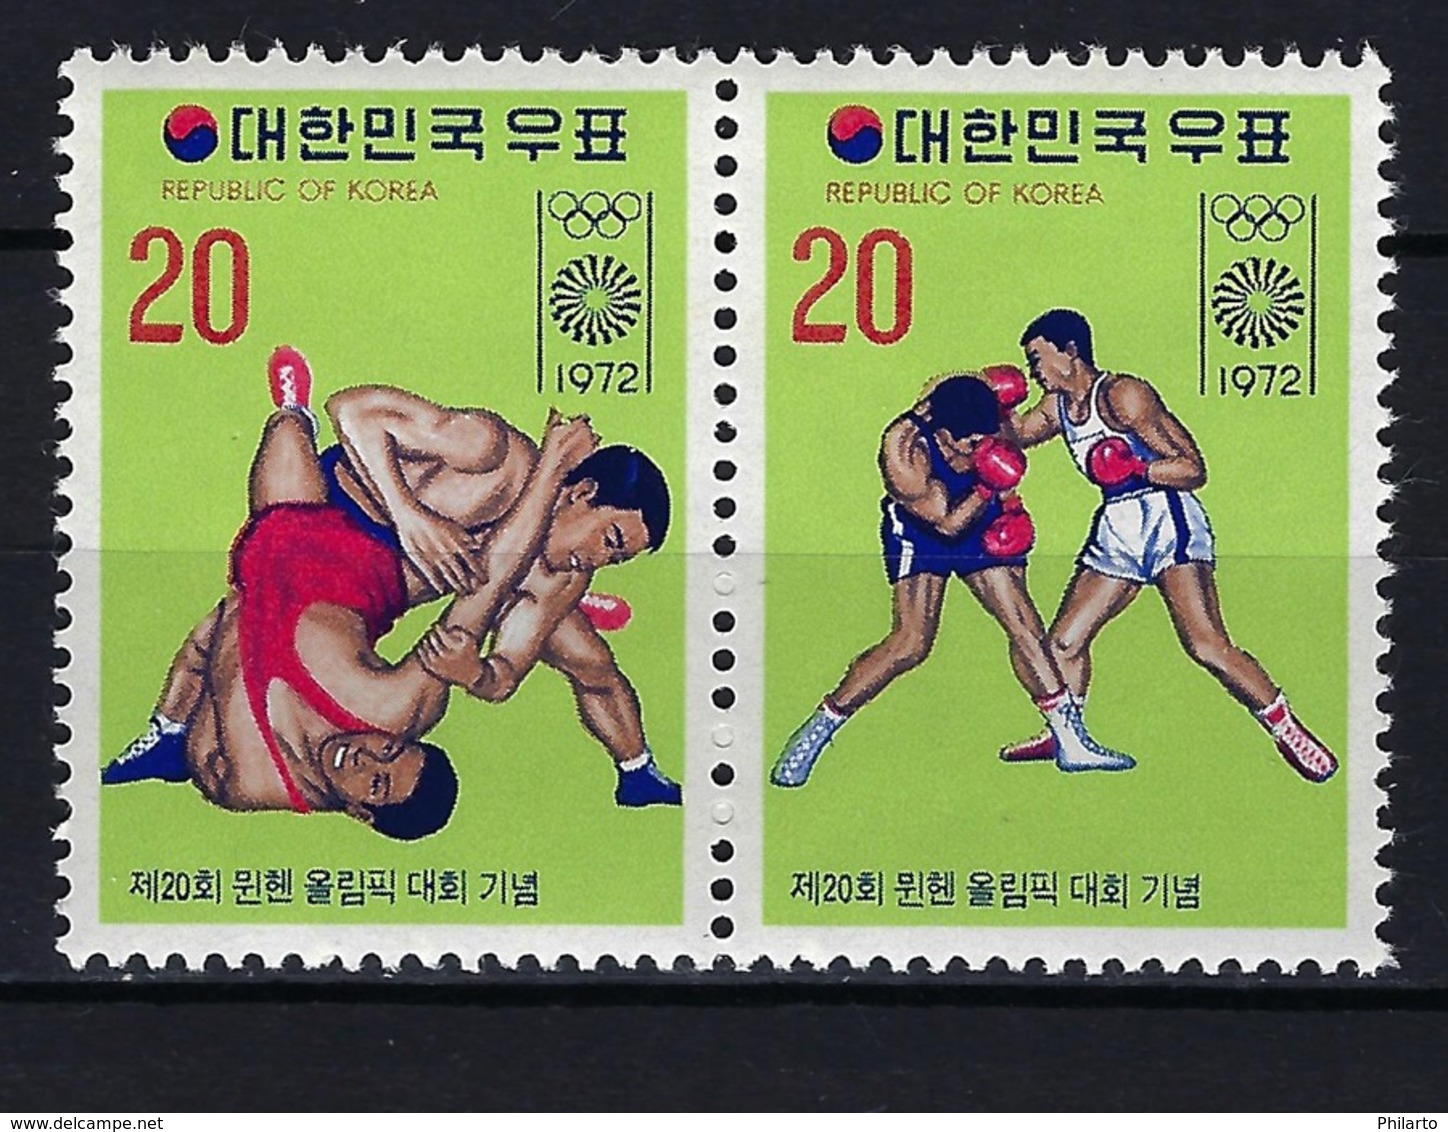 1972 COREA DEL SUR - MICHEL 847/848 MNH** NUEVOS SIN FIJASELLOS JJOO JUEGOS OLÍMPICOS MUNICH '72 BOXEO LUCHA LIBRE - Corea Del Sur